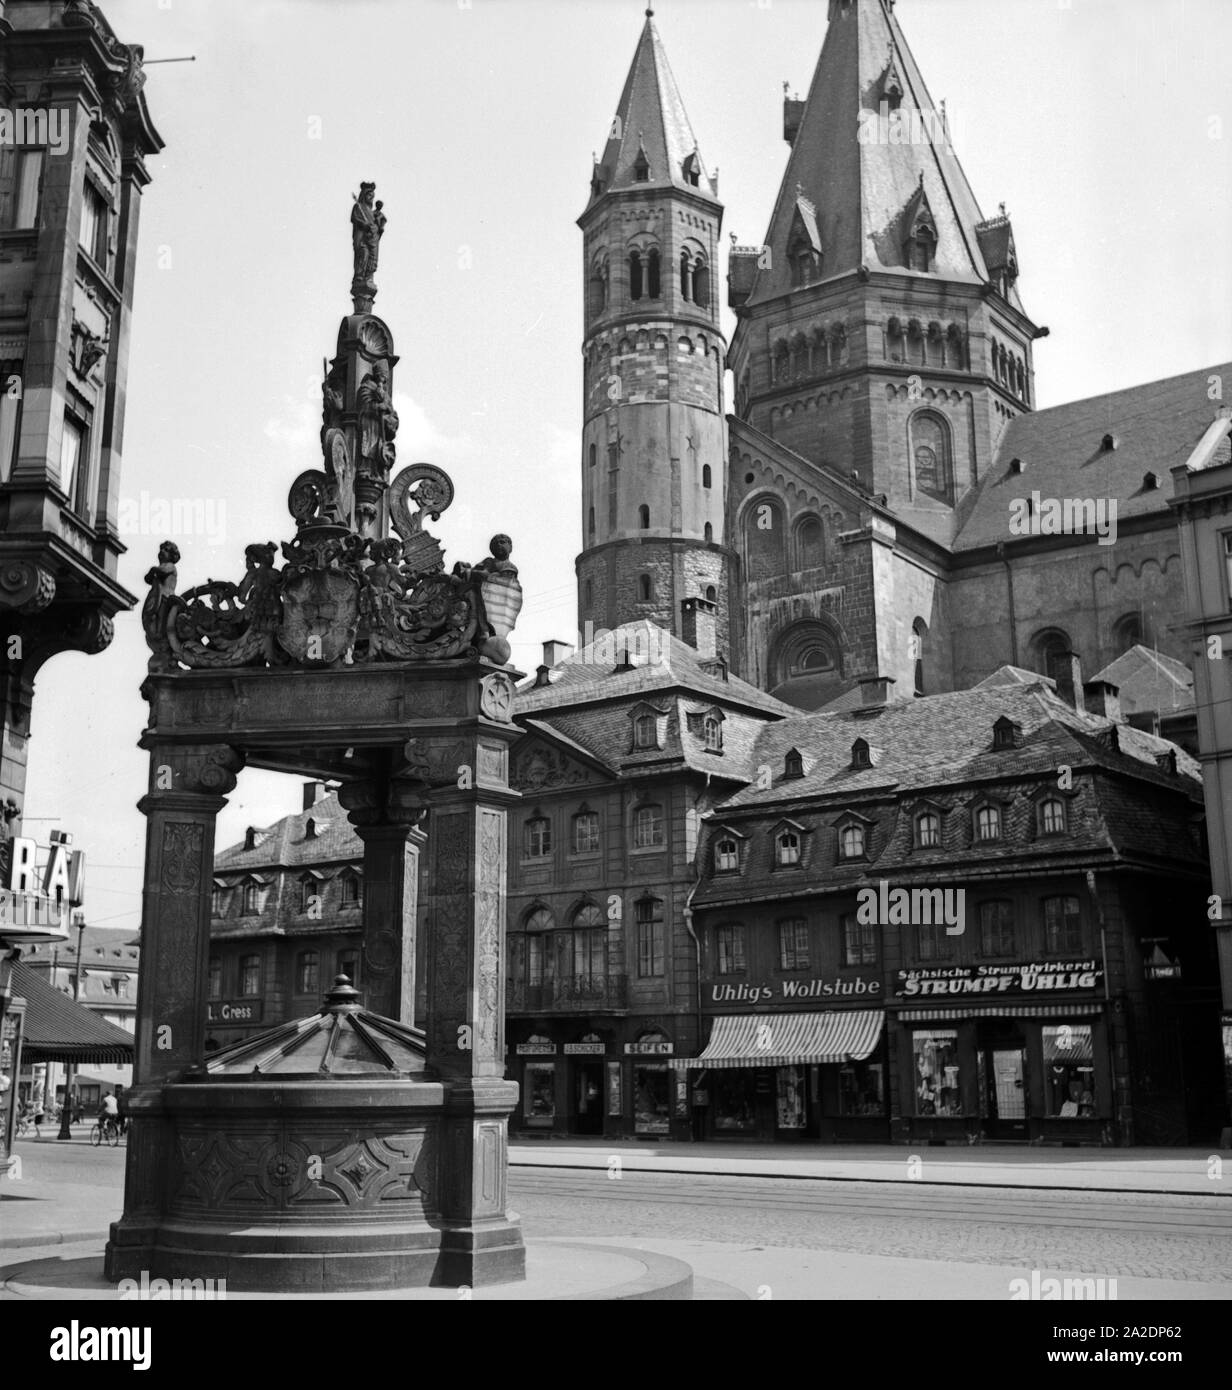 Der Hohe Dom zu Mainz mit Marktplatz, Marktbrunnen und Geschäften am Dom, Deutschland 1930er Jahre. Mainz cattedrale con il principale mercato, fontana e negozi, Germania 1930s. Foto Stock